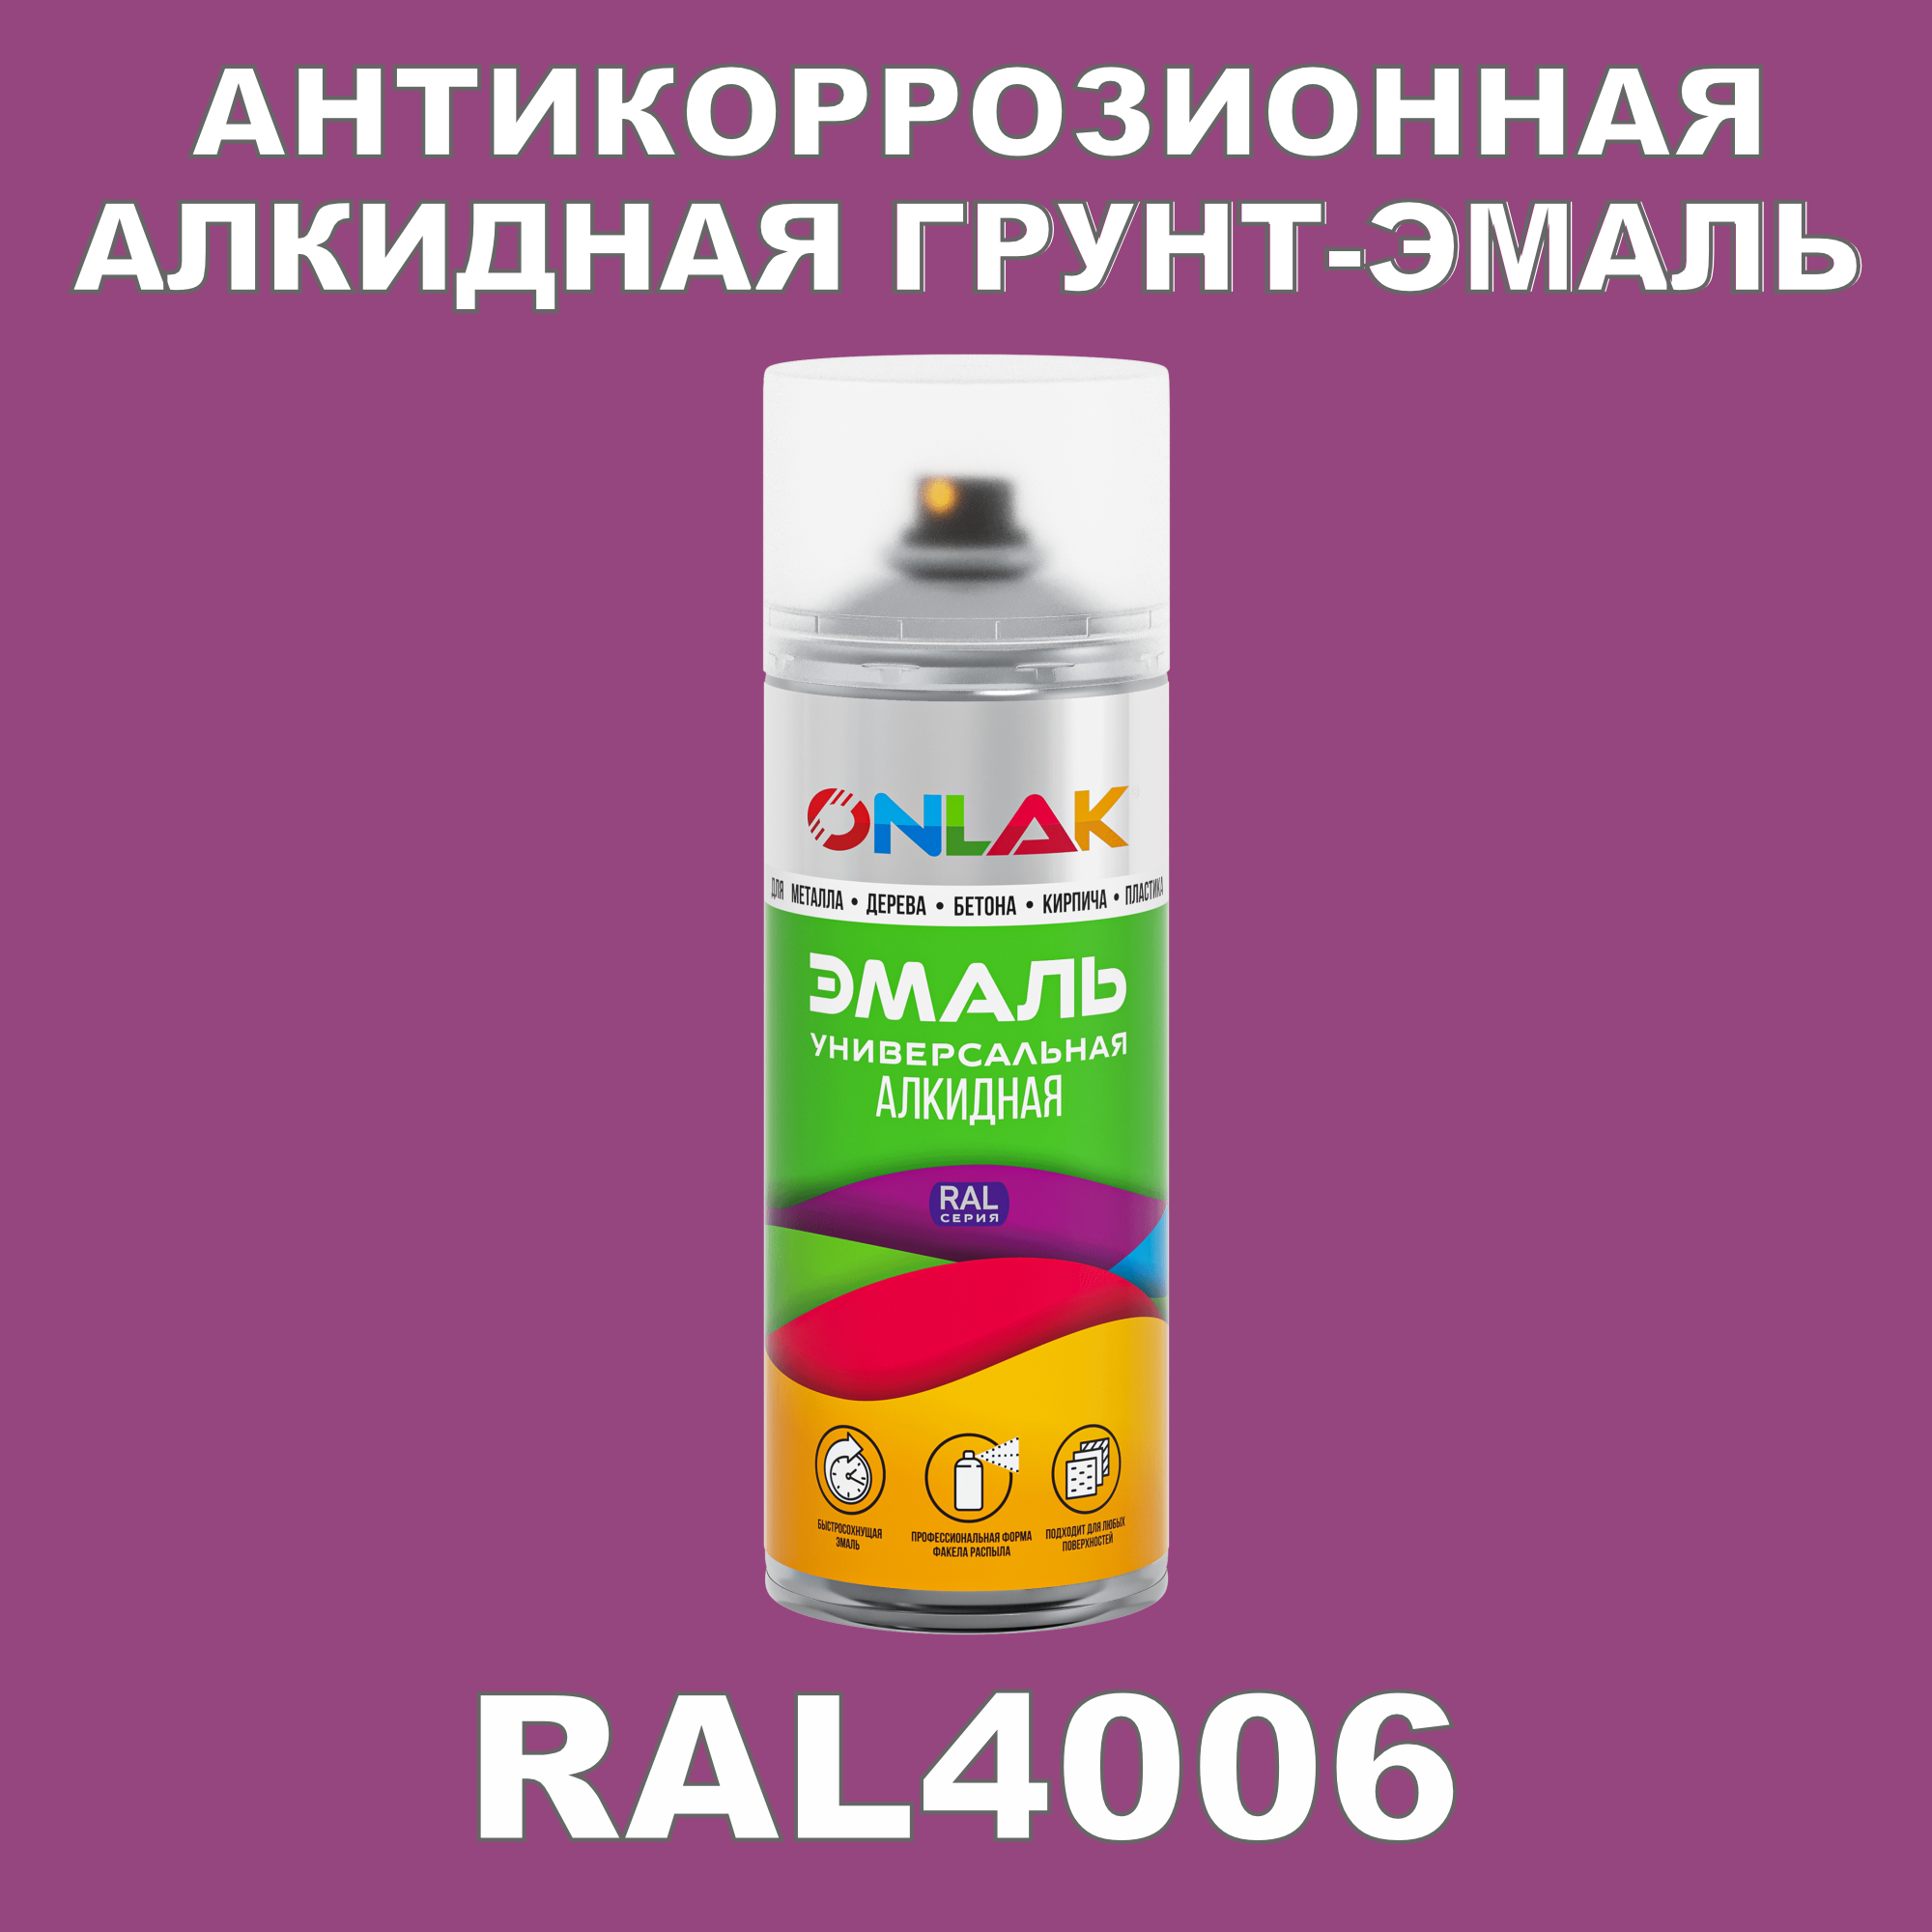 Антикоррозионная грунт-эмаль ONLAK RAL 4006,фиолетовый,682 мл artuniq color violet цветной грунт для аквариума фиолетовый 3 кг